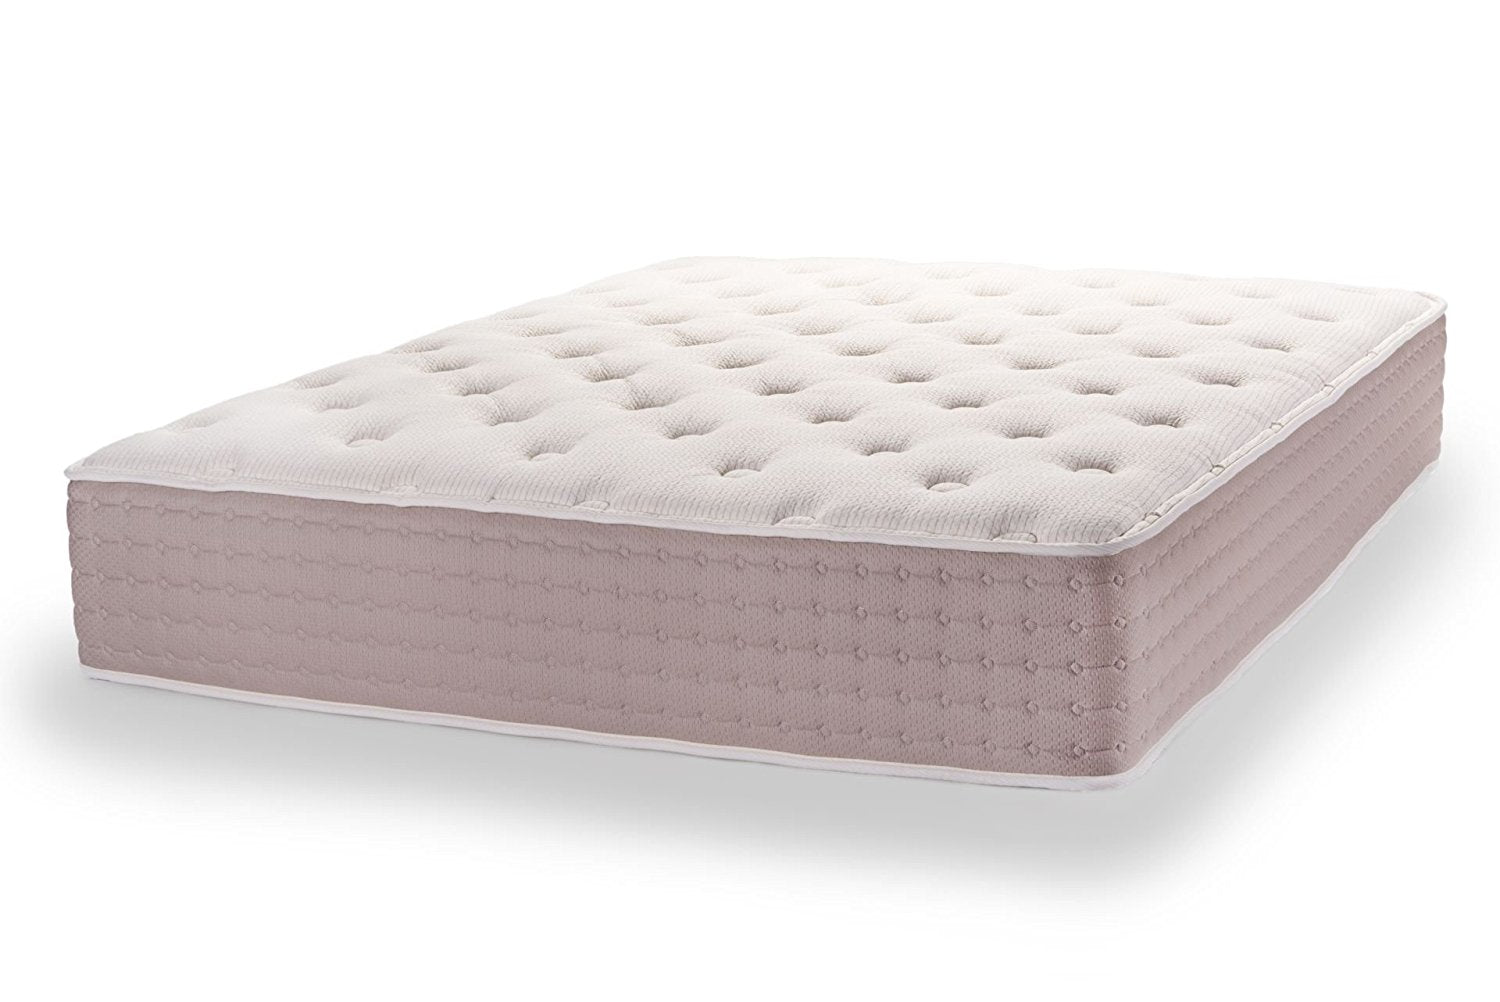 dunlop latex mattress no chemicals